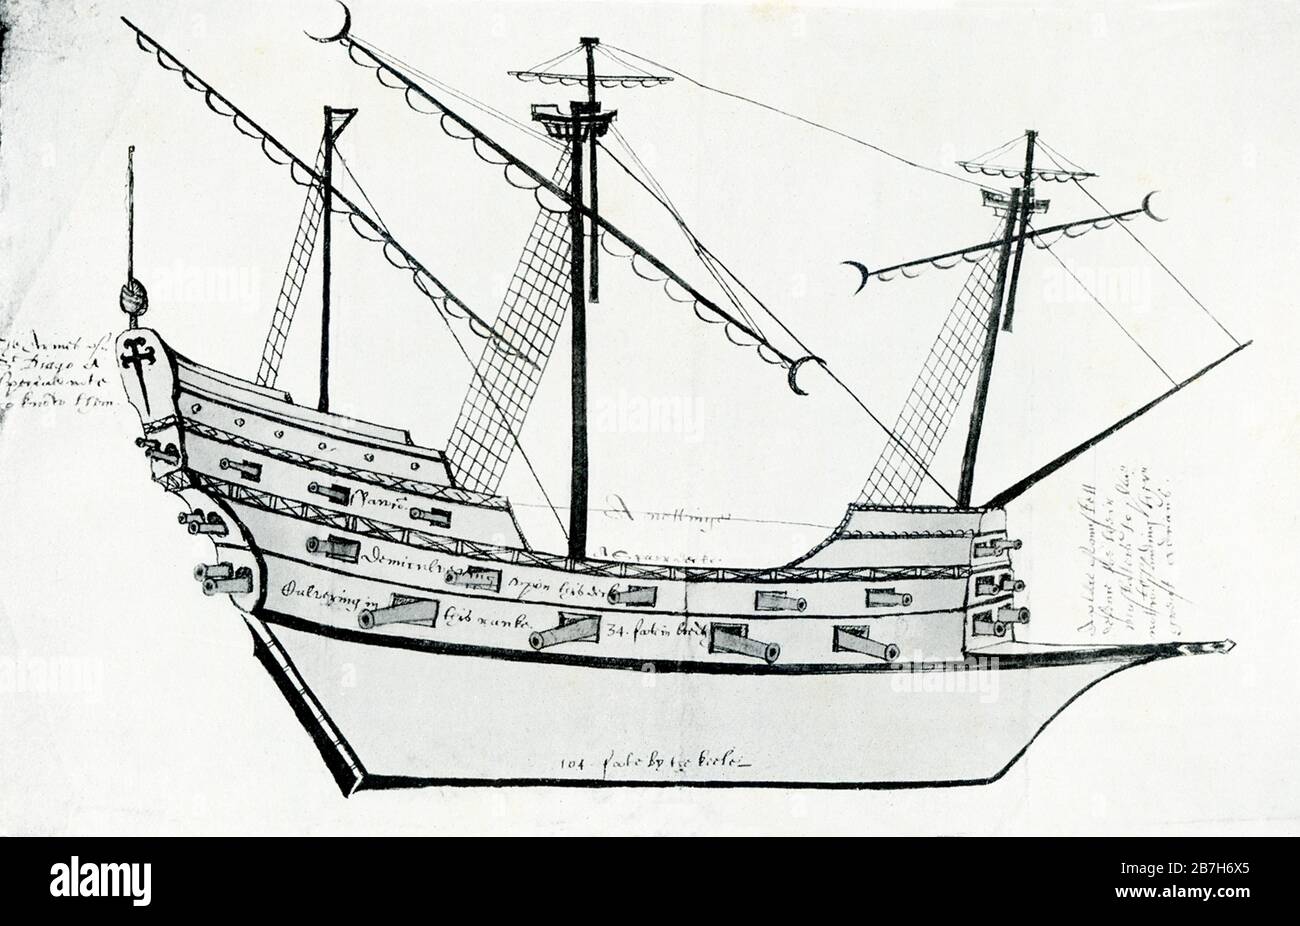 Die spanische Schatzflotte, auch Silberflotte oder Plattenflotte genannt, war ein Konvoisystem von Seerouten, das vom spanischen Reich von 1566 bis ins Jahr 1790 organisiert wurde. Sie verband Spanien mit seinen Territorien in Amerika über den Atlantik. Gezeigt wird hier eine Fregatte von etwa 1590. Eine Fregatte ist ein Kriegsschiffstyp mit verschiedenen Größen und Rollen im Laufe der Zeit. Im 17. Jahrhundert war eine Fregatte jedes Kriegsschiff, das für Geschwindigkeit und Manövrierfähigkeit gebaut wurde. Stockfoto